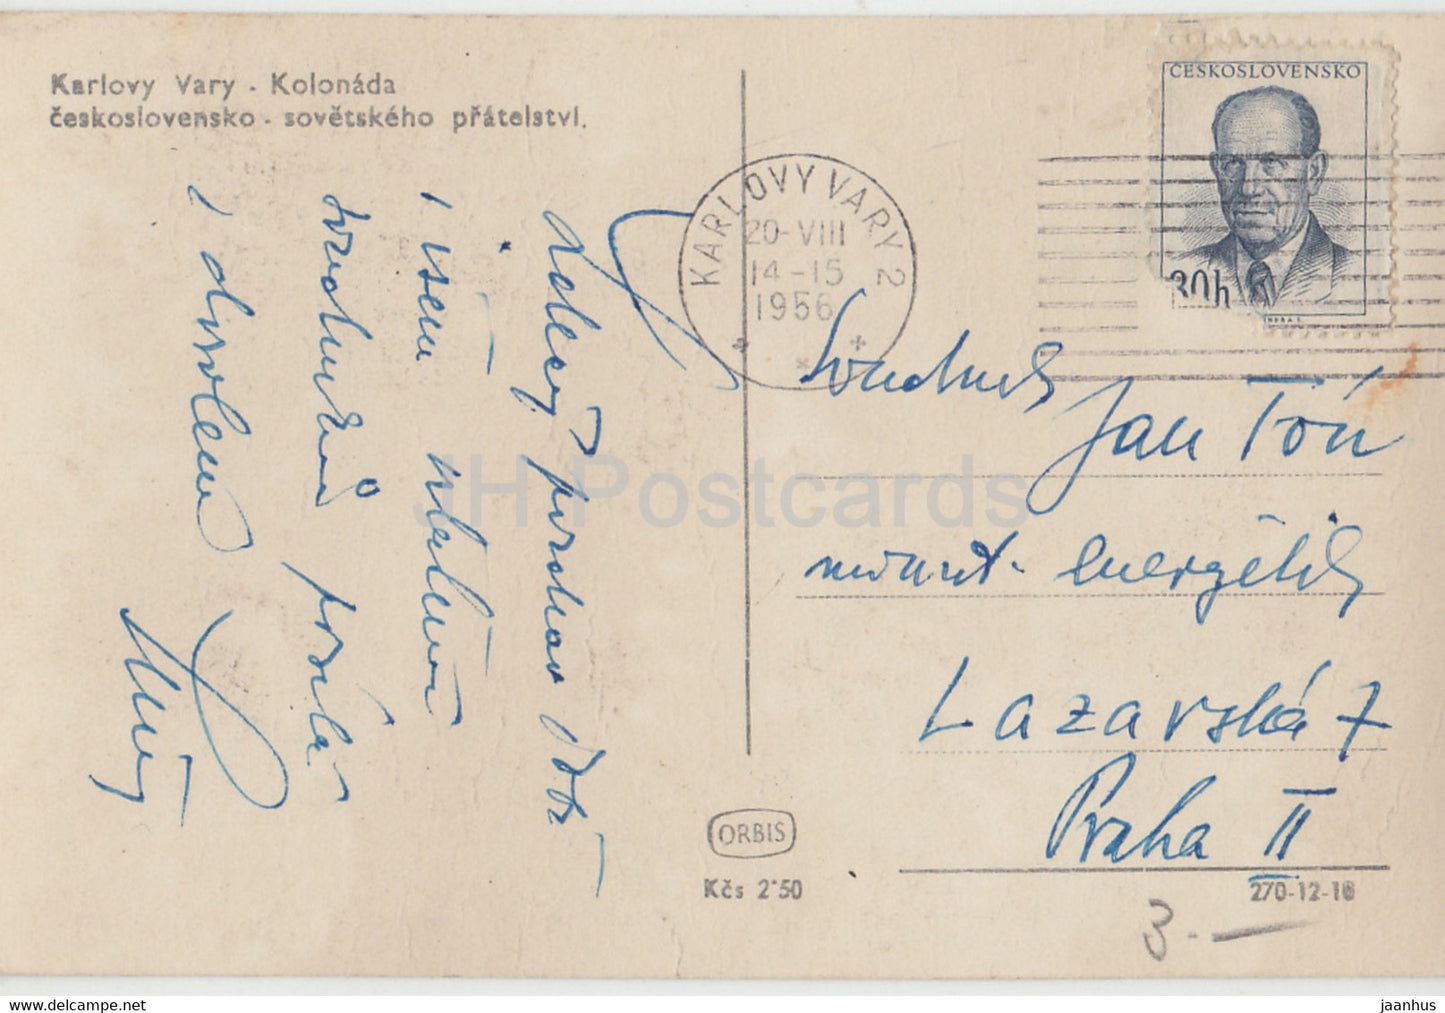 Karlsbad - Karlsbad - Kolonada - Kolonnade - 593 - alte Postkarte - 1956 - Tschechoslowakei - Tschechische Republik - unbenutzt